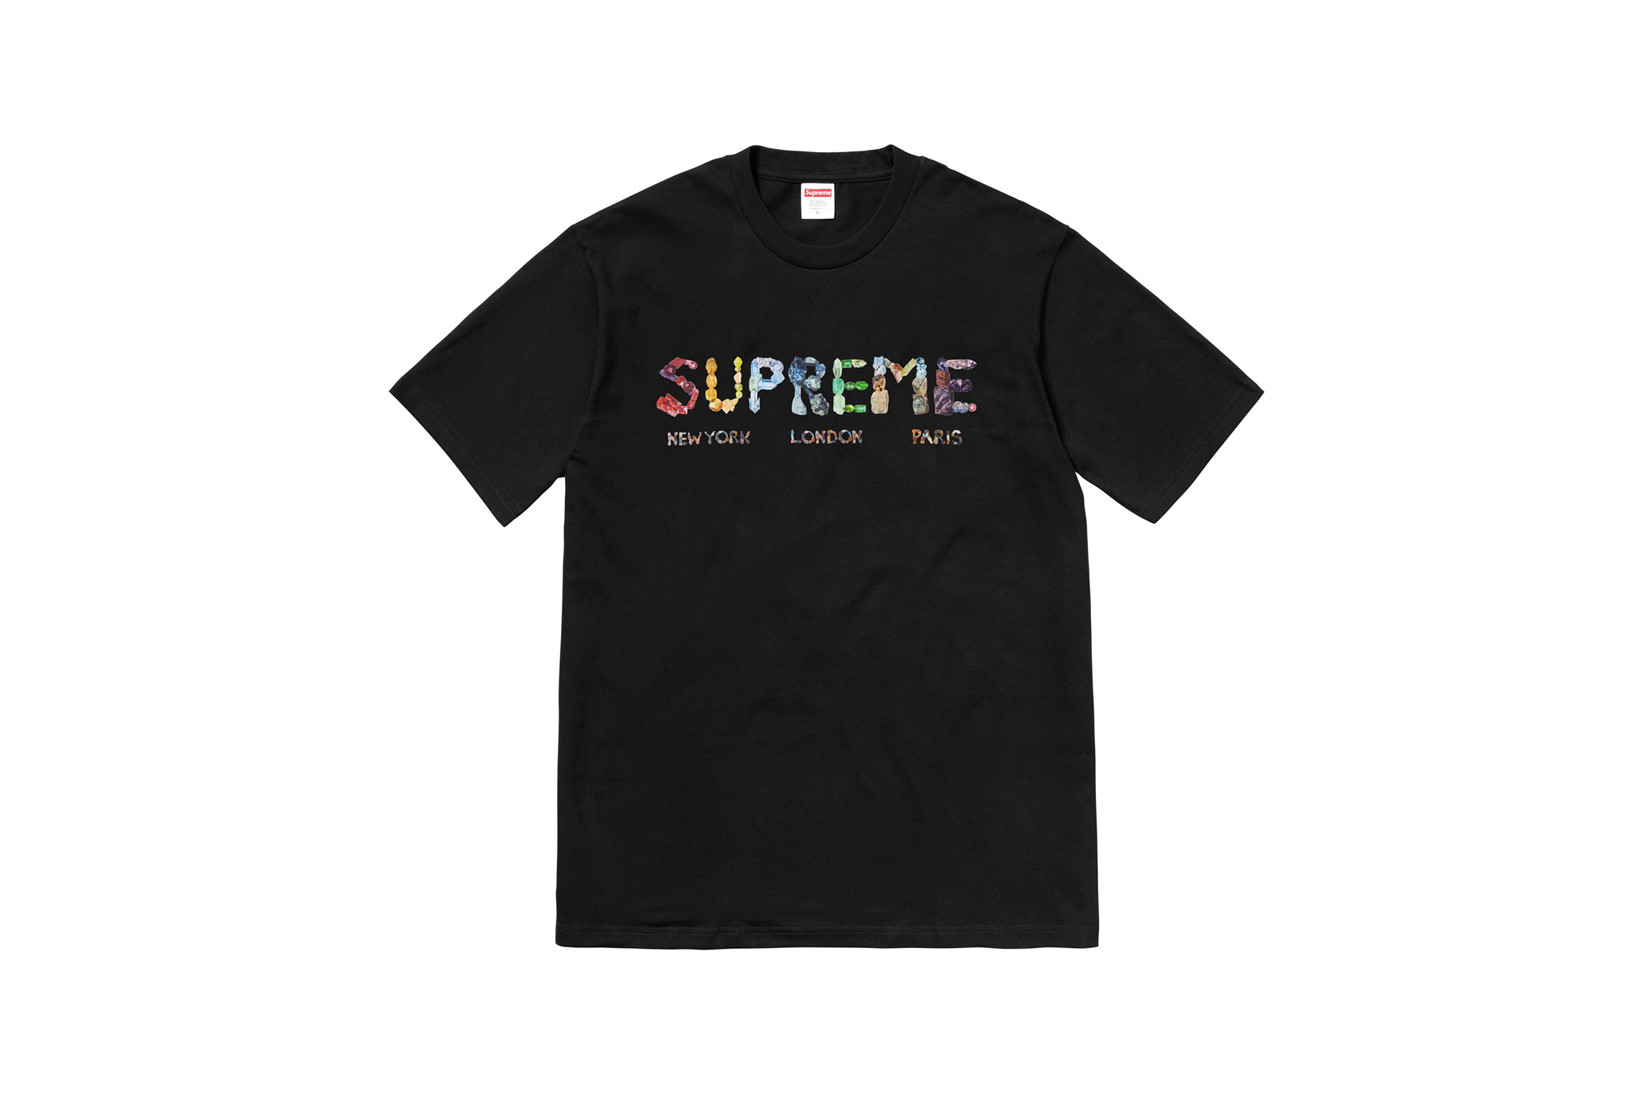 Supreme presenta la sua collezione di T-shirt per l'estate 2018